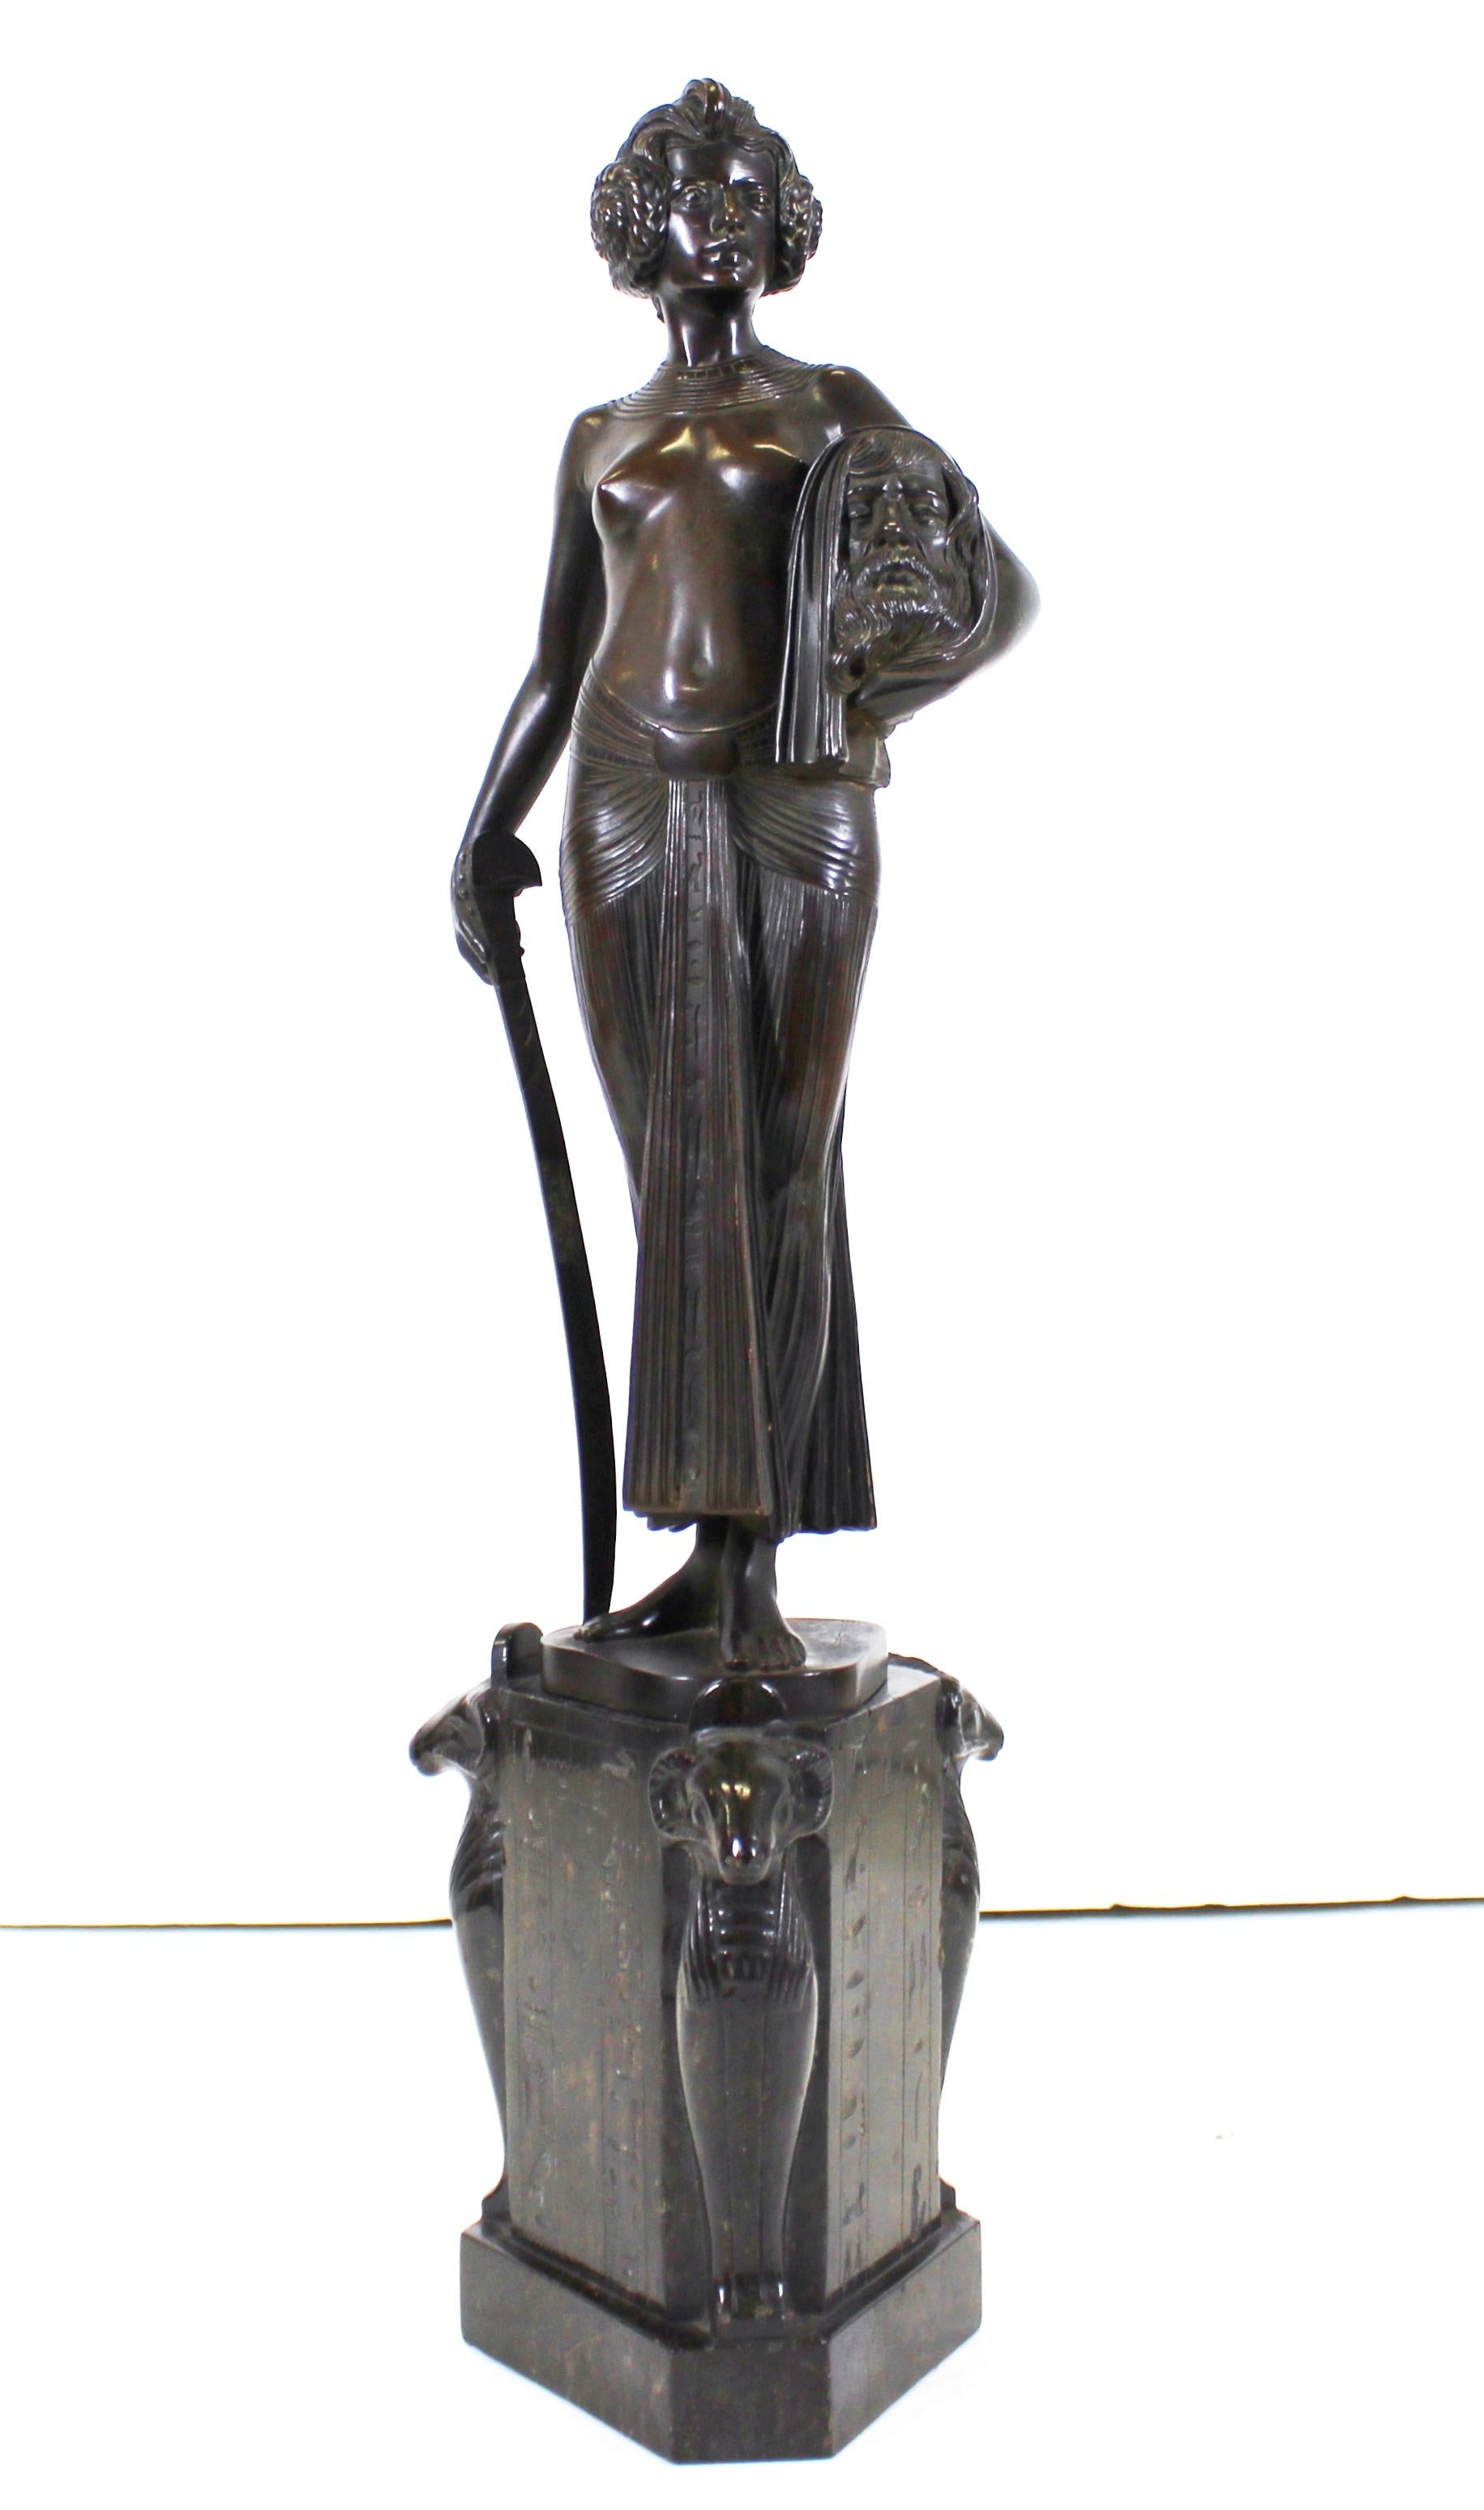 Sculpture allemande en bronze de style Jugendstil représentant Judith tenant son épée et la tête d'Holopherne, réalisée par le sculpteur et médailliste allemand Frist Christ (1866-1906). La figure de Judith repose sur une base hexagonale en marbre